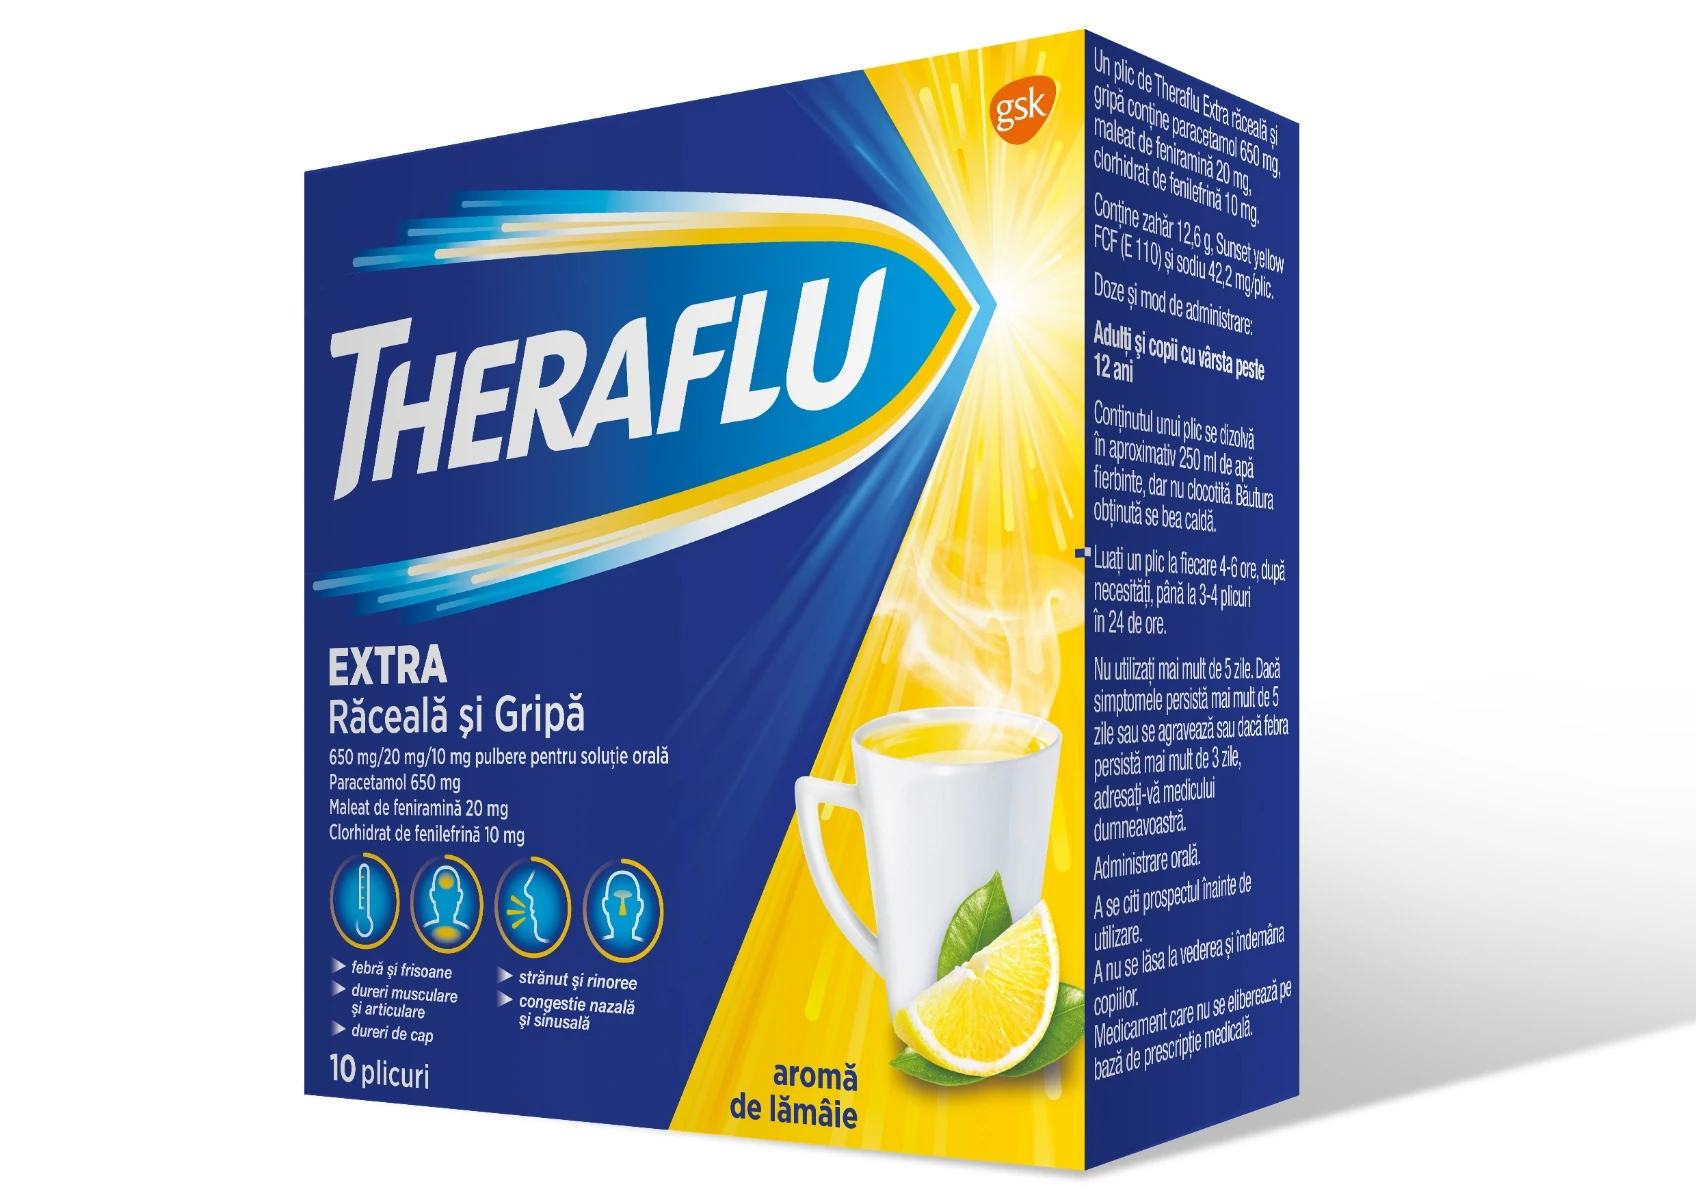 THERAFLU EXTRA RACEALA SI GRIPA 650 mg/20 mg/10 mg x 10